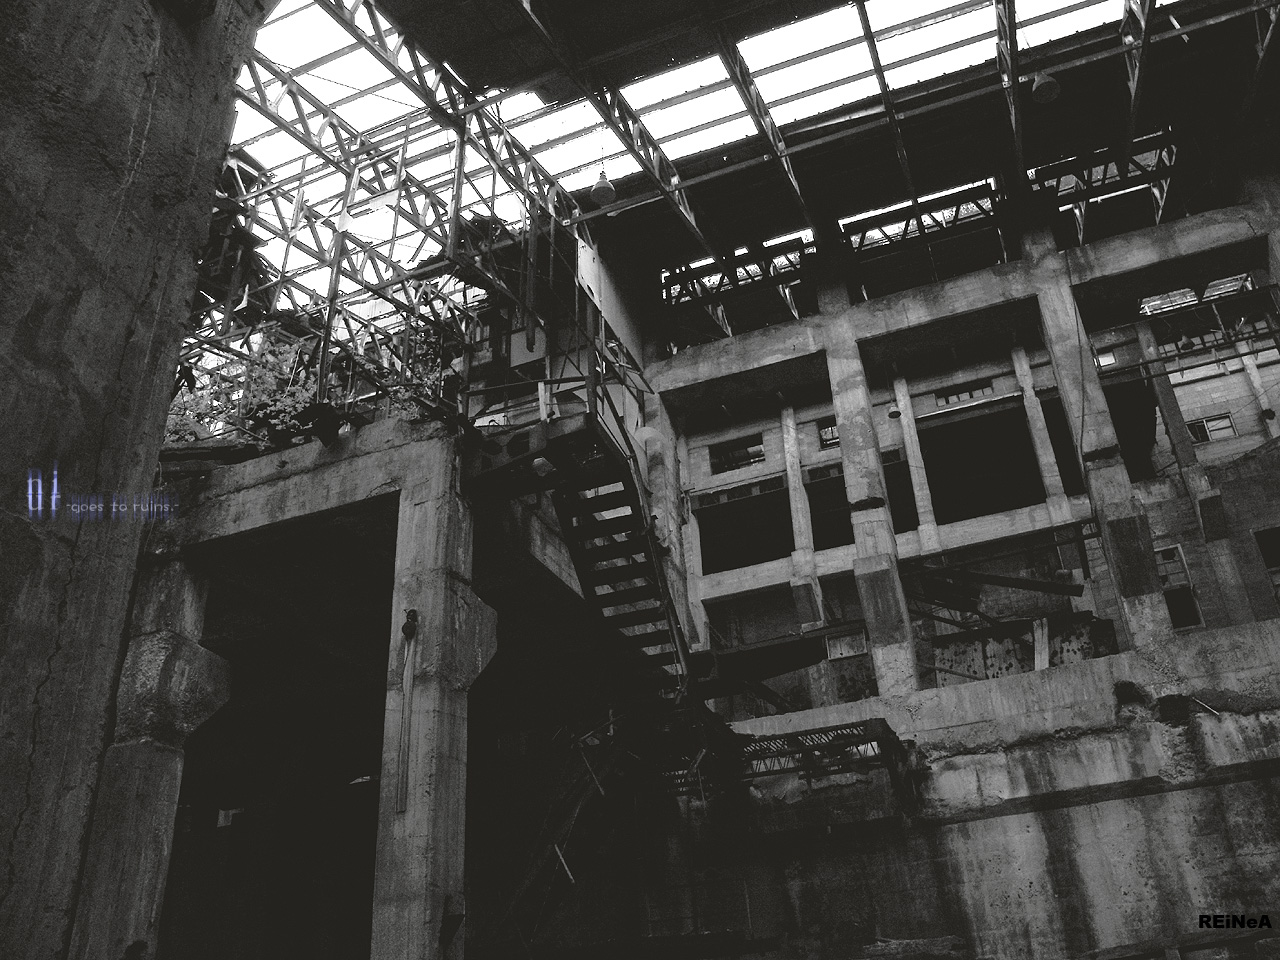 Niur ニウール 廃墟壁紙 廃墟写真のフリー素材 ダウンロード